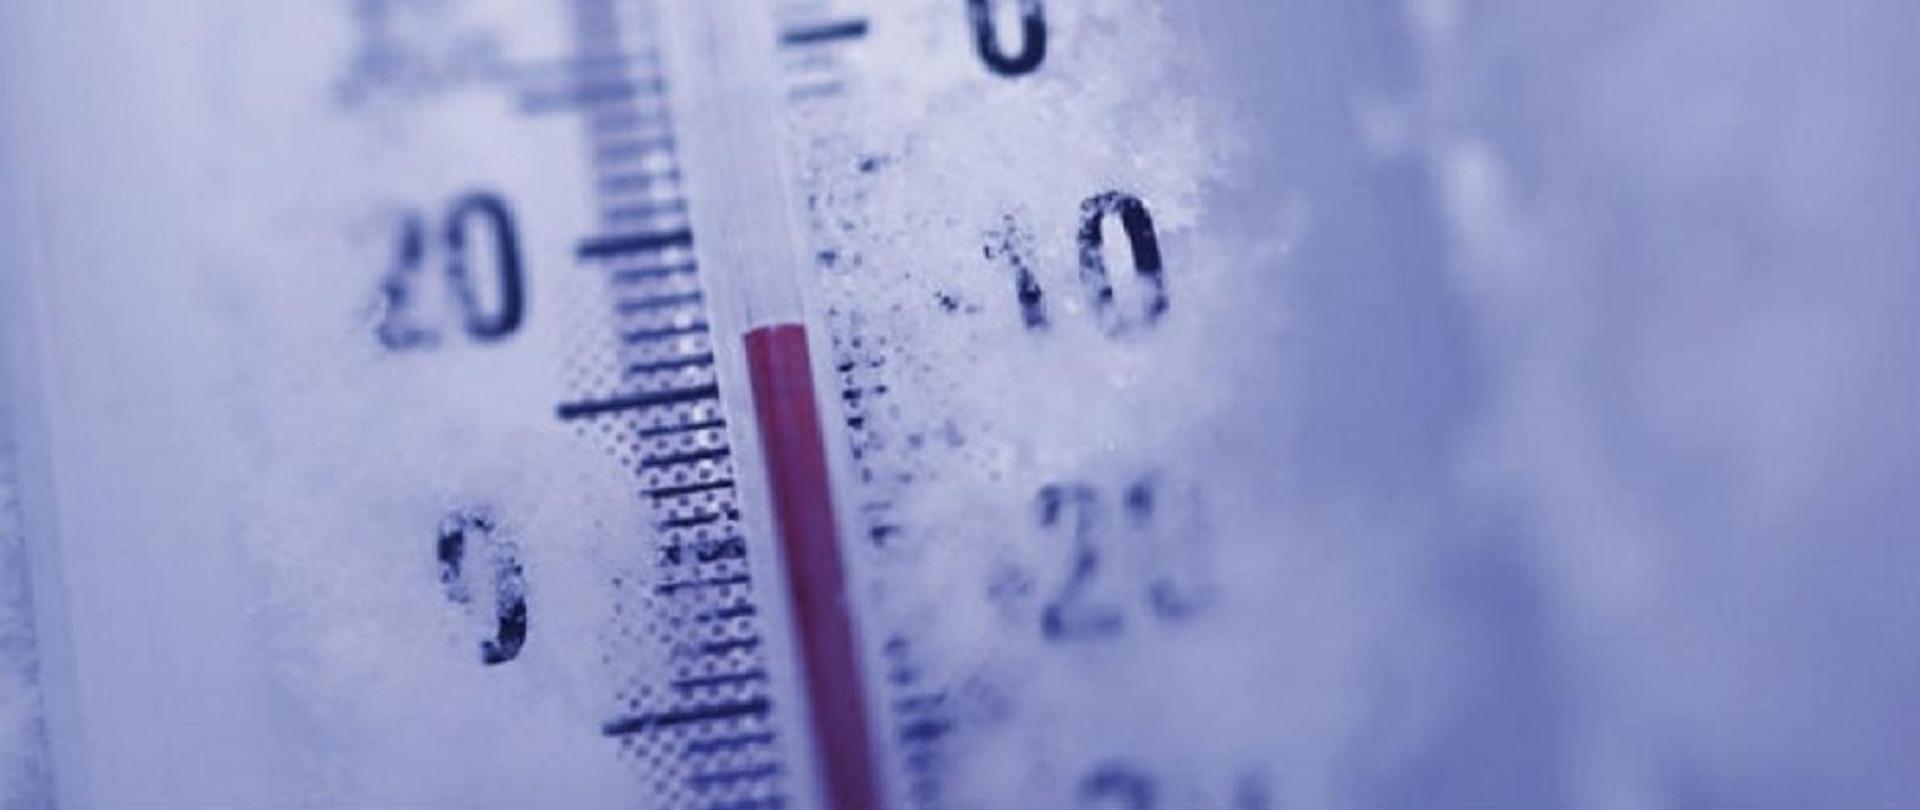 Na zdjęciu widać część termometru rtęciowego z ujemną temperaturą. 